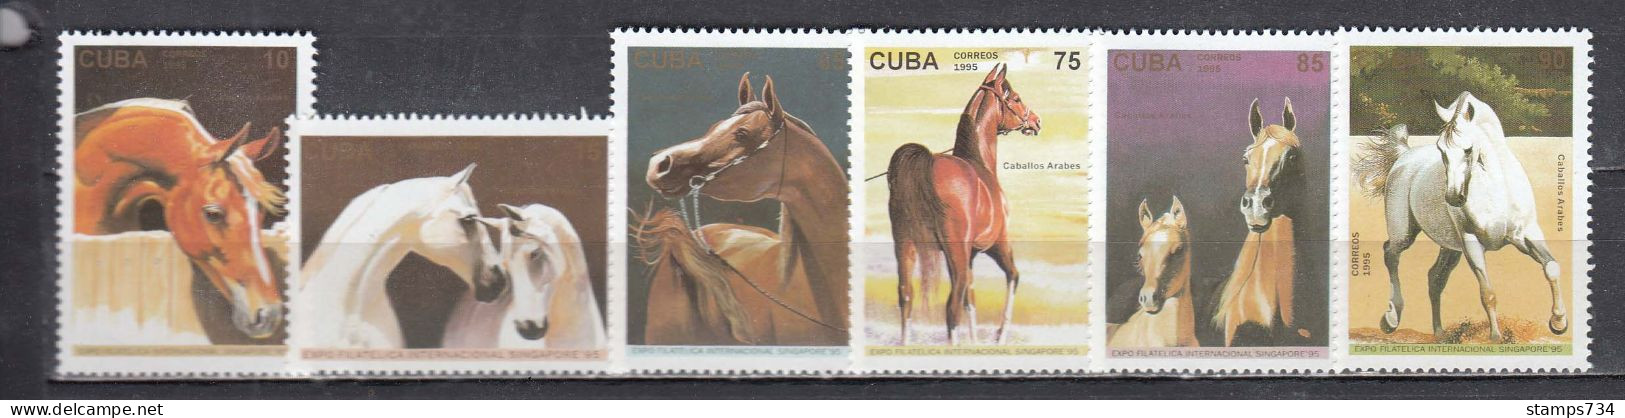 Cuba 1995 - Horses, Mi-nr. 3835/40, MNH** - Unused Stamps